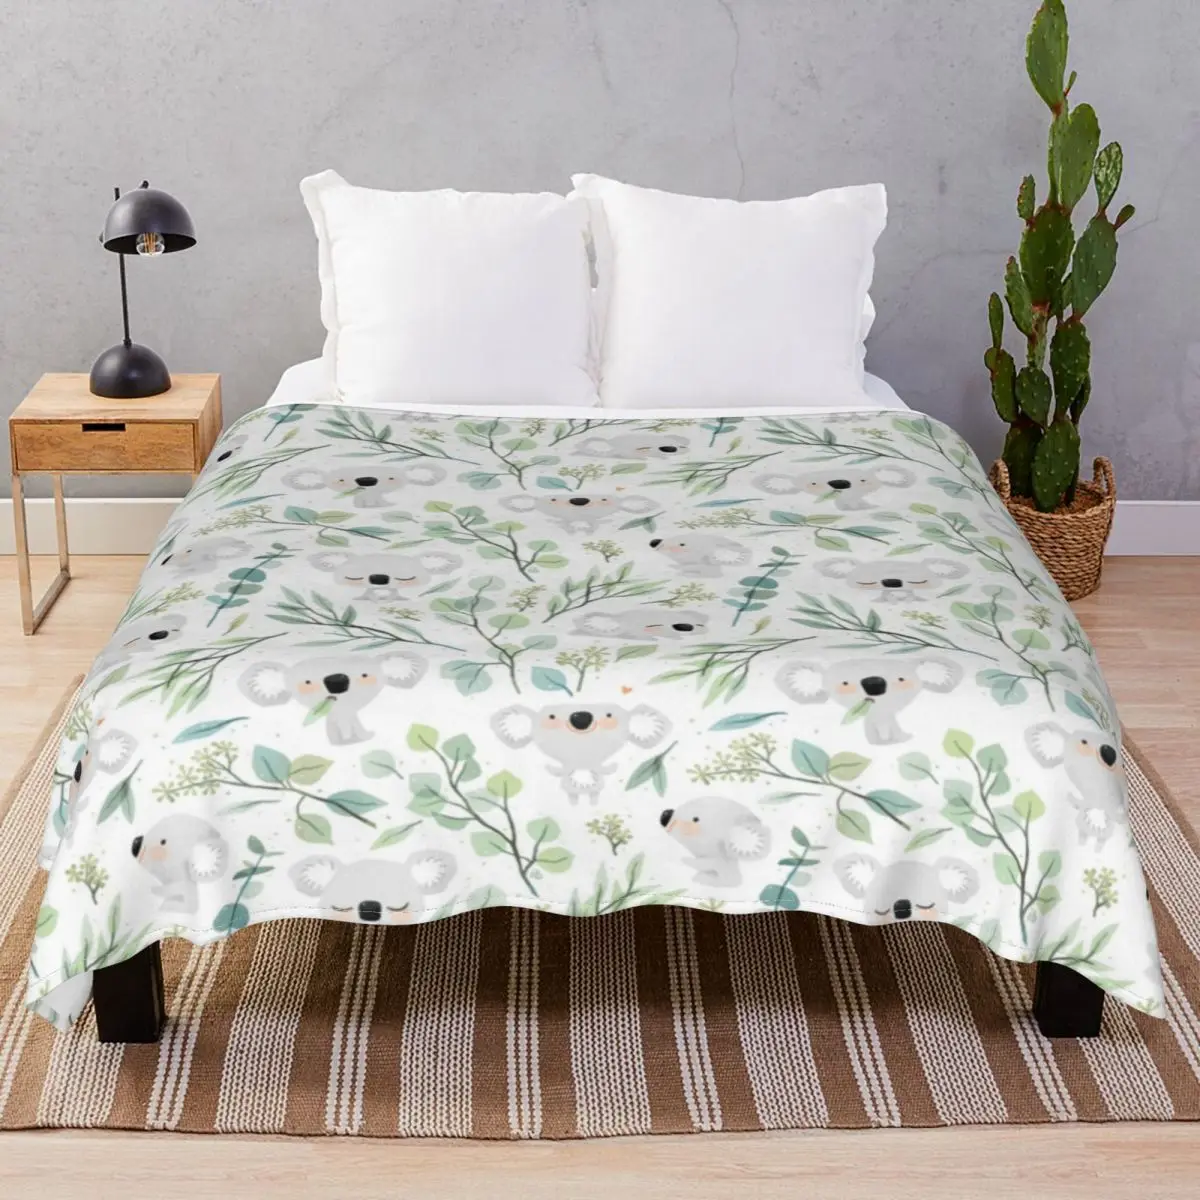 Koala And Eucalyptus Blankets Velvet Textile Decor Multi-function Unisex Throw Blanket for Bedding Home Couch Travel Cinema